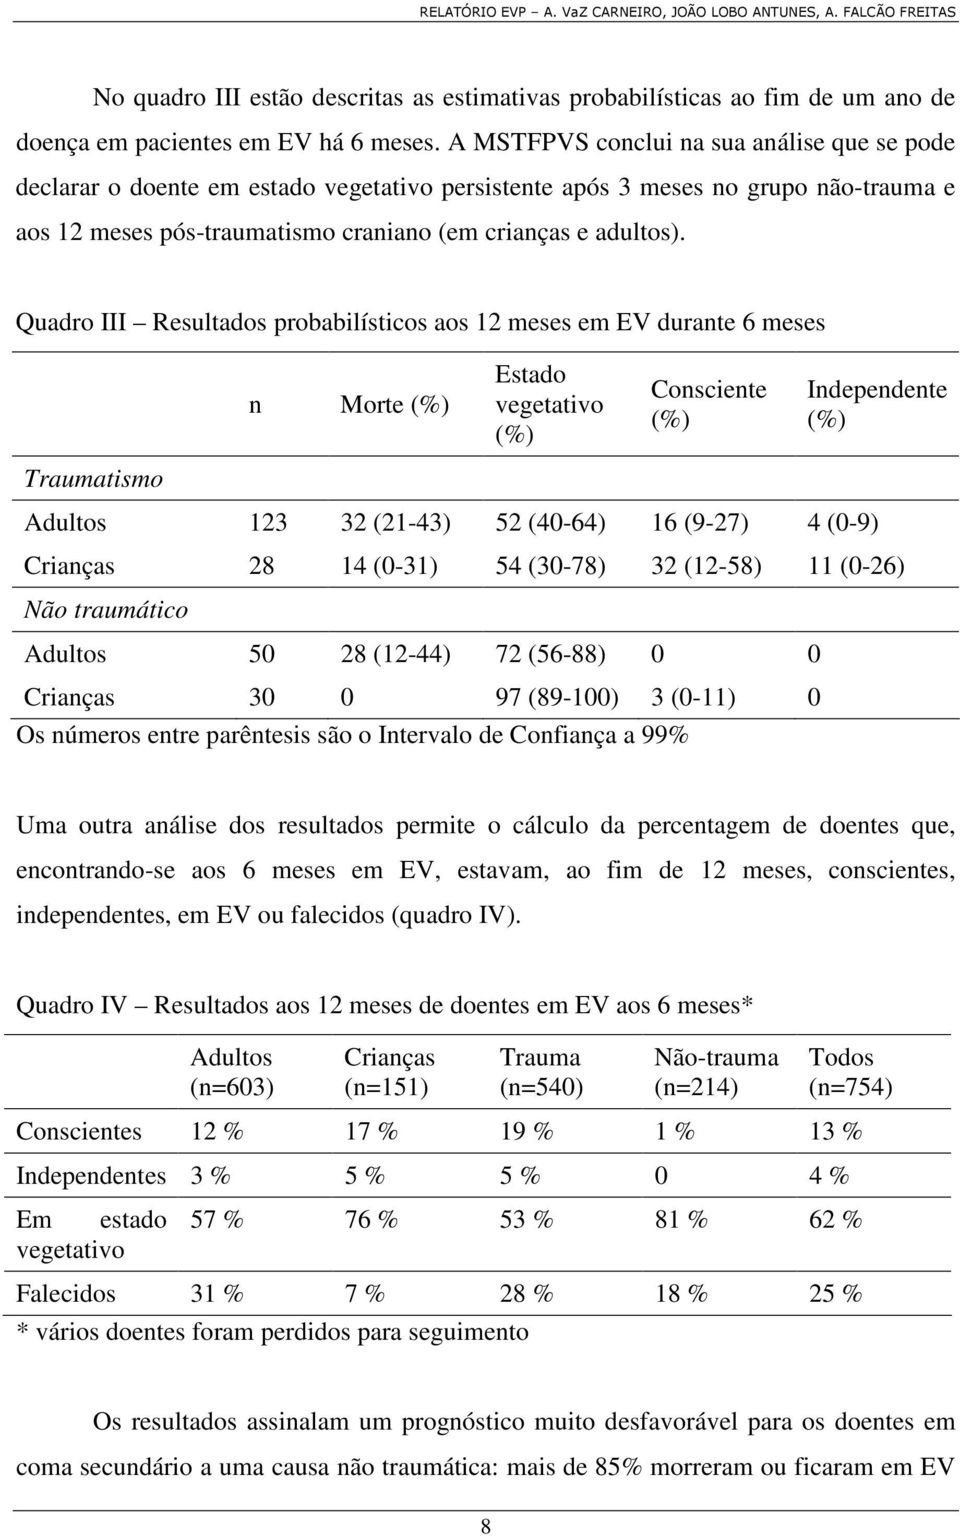 Quadro III Resultados probabilísticos aos 12 meses em EV durante 6 meses Traumatismo n Morte (%) Estado vegetativo (%) Consciente (%) Independente (%) Adultos 123 32 (21-43) 52 (40-64) 16 (9-27) 4